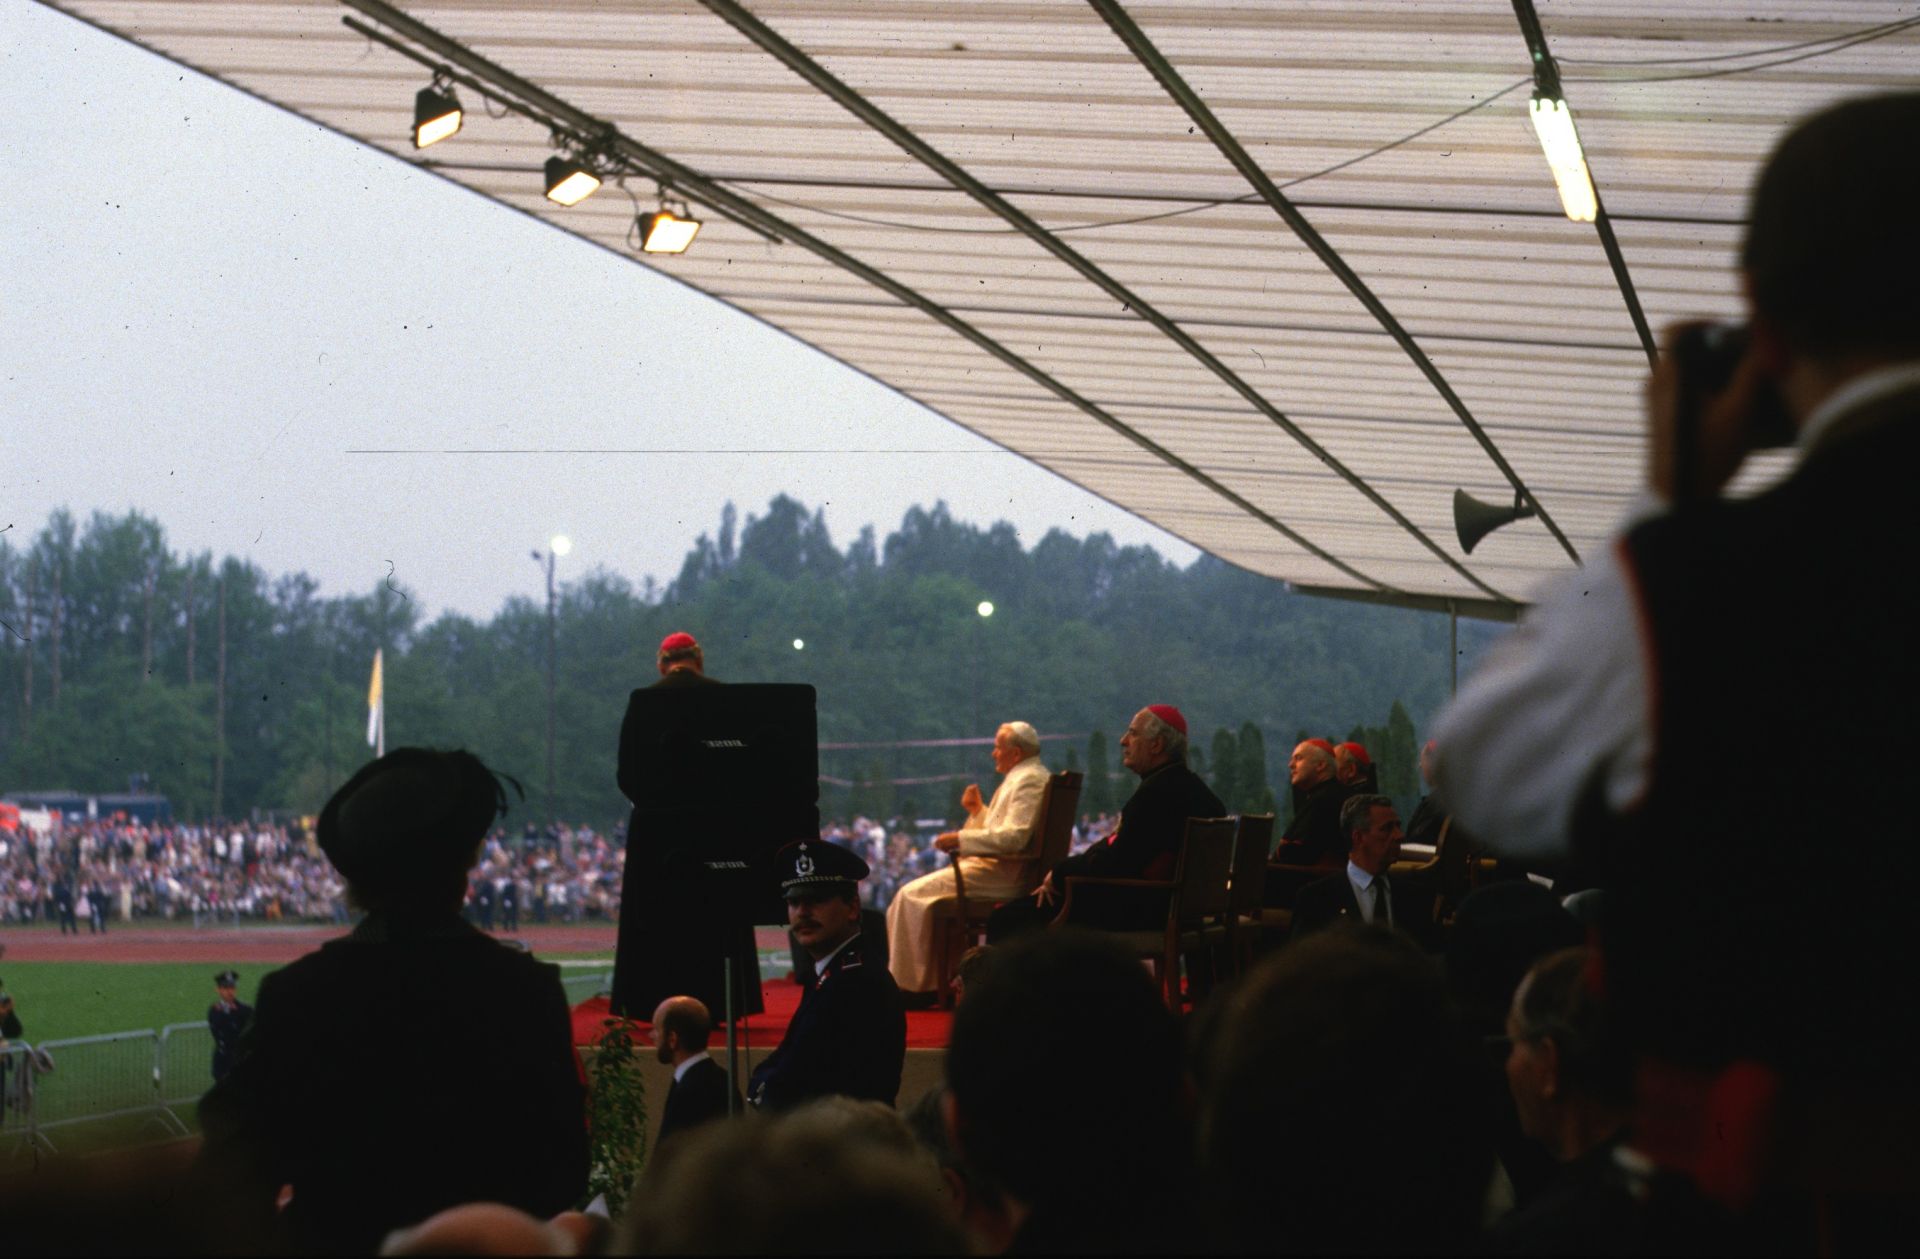  Bruksela. Spotkanie Ojca Świętego z Polonią. 1985 r.